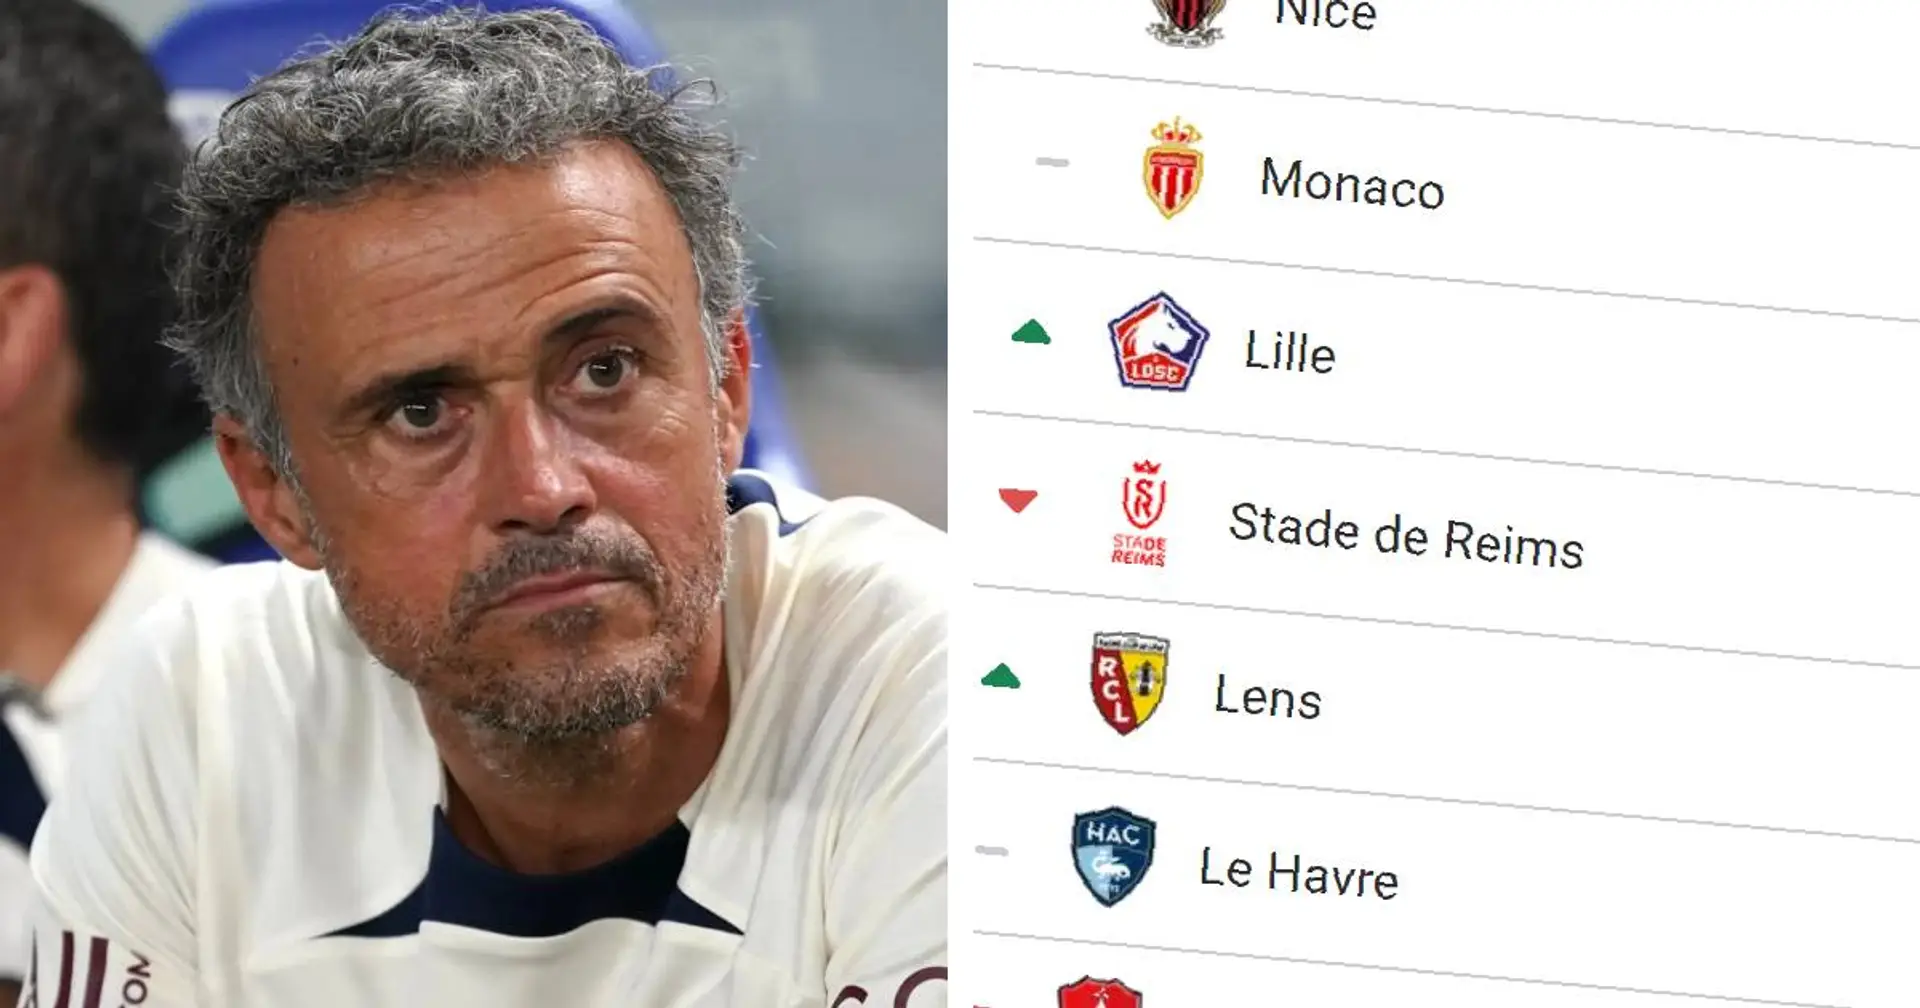 Le PSG leader, Monaco détaché : classement actualisé de la Ligue 1